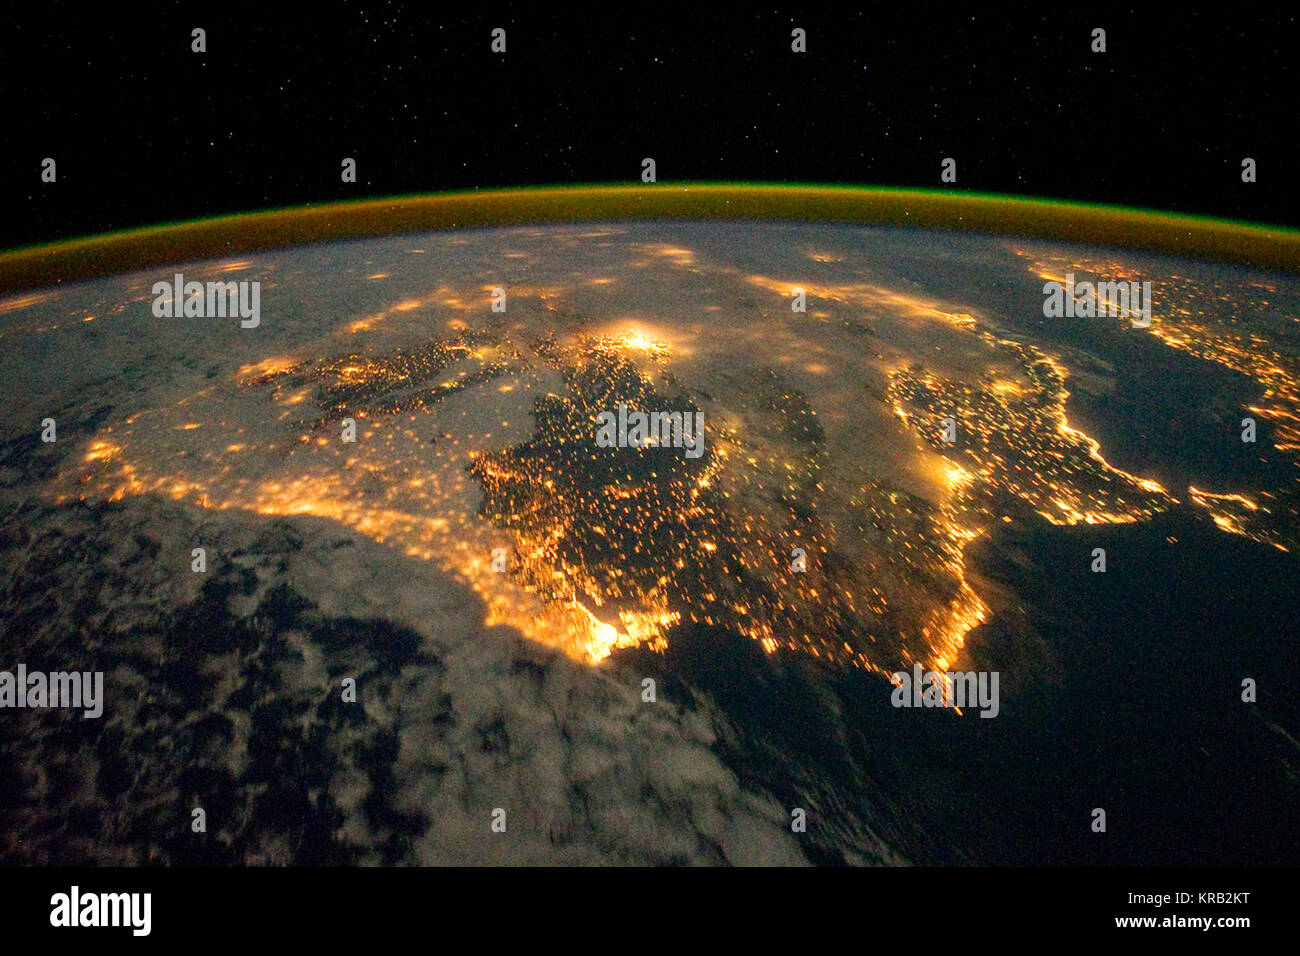 Die Lichter der Stadt von Spanien und Portugal die Iberische Halbinsel definieren in diesem Foto von der Internationalen Raumstation (ISS). Mehrere große Ballungsgebiete sind sichtbar, durch ihre relativ große gekennzeichnet und hell beleuchtete Bereiche, einschließlich der Hauptstadt in Madrid, Spanien - in der Nähe des Zentrums von Inneren der Halbinsel - und Lissabon, Portugal - Entlang der südwestlichen Küste gelegen. Die antike Stadt Sevilla, sichtbar nördlich der Meerenge von Gibraltar, ist eine der größten Städte in Spanien. Astronaut Foto ISS030-E -10008 wurde am Dezember 4, 2011 erworben, mit einer Nikon D3S d Stockfoto